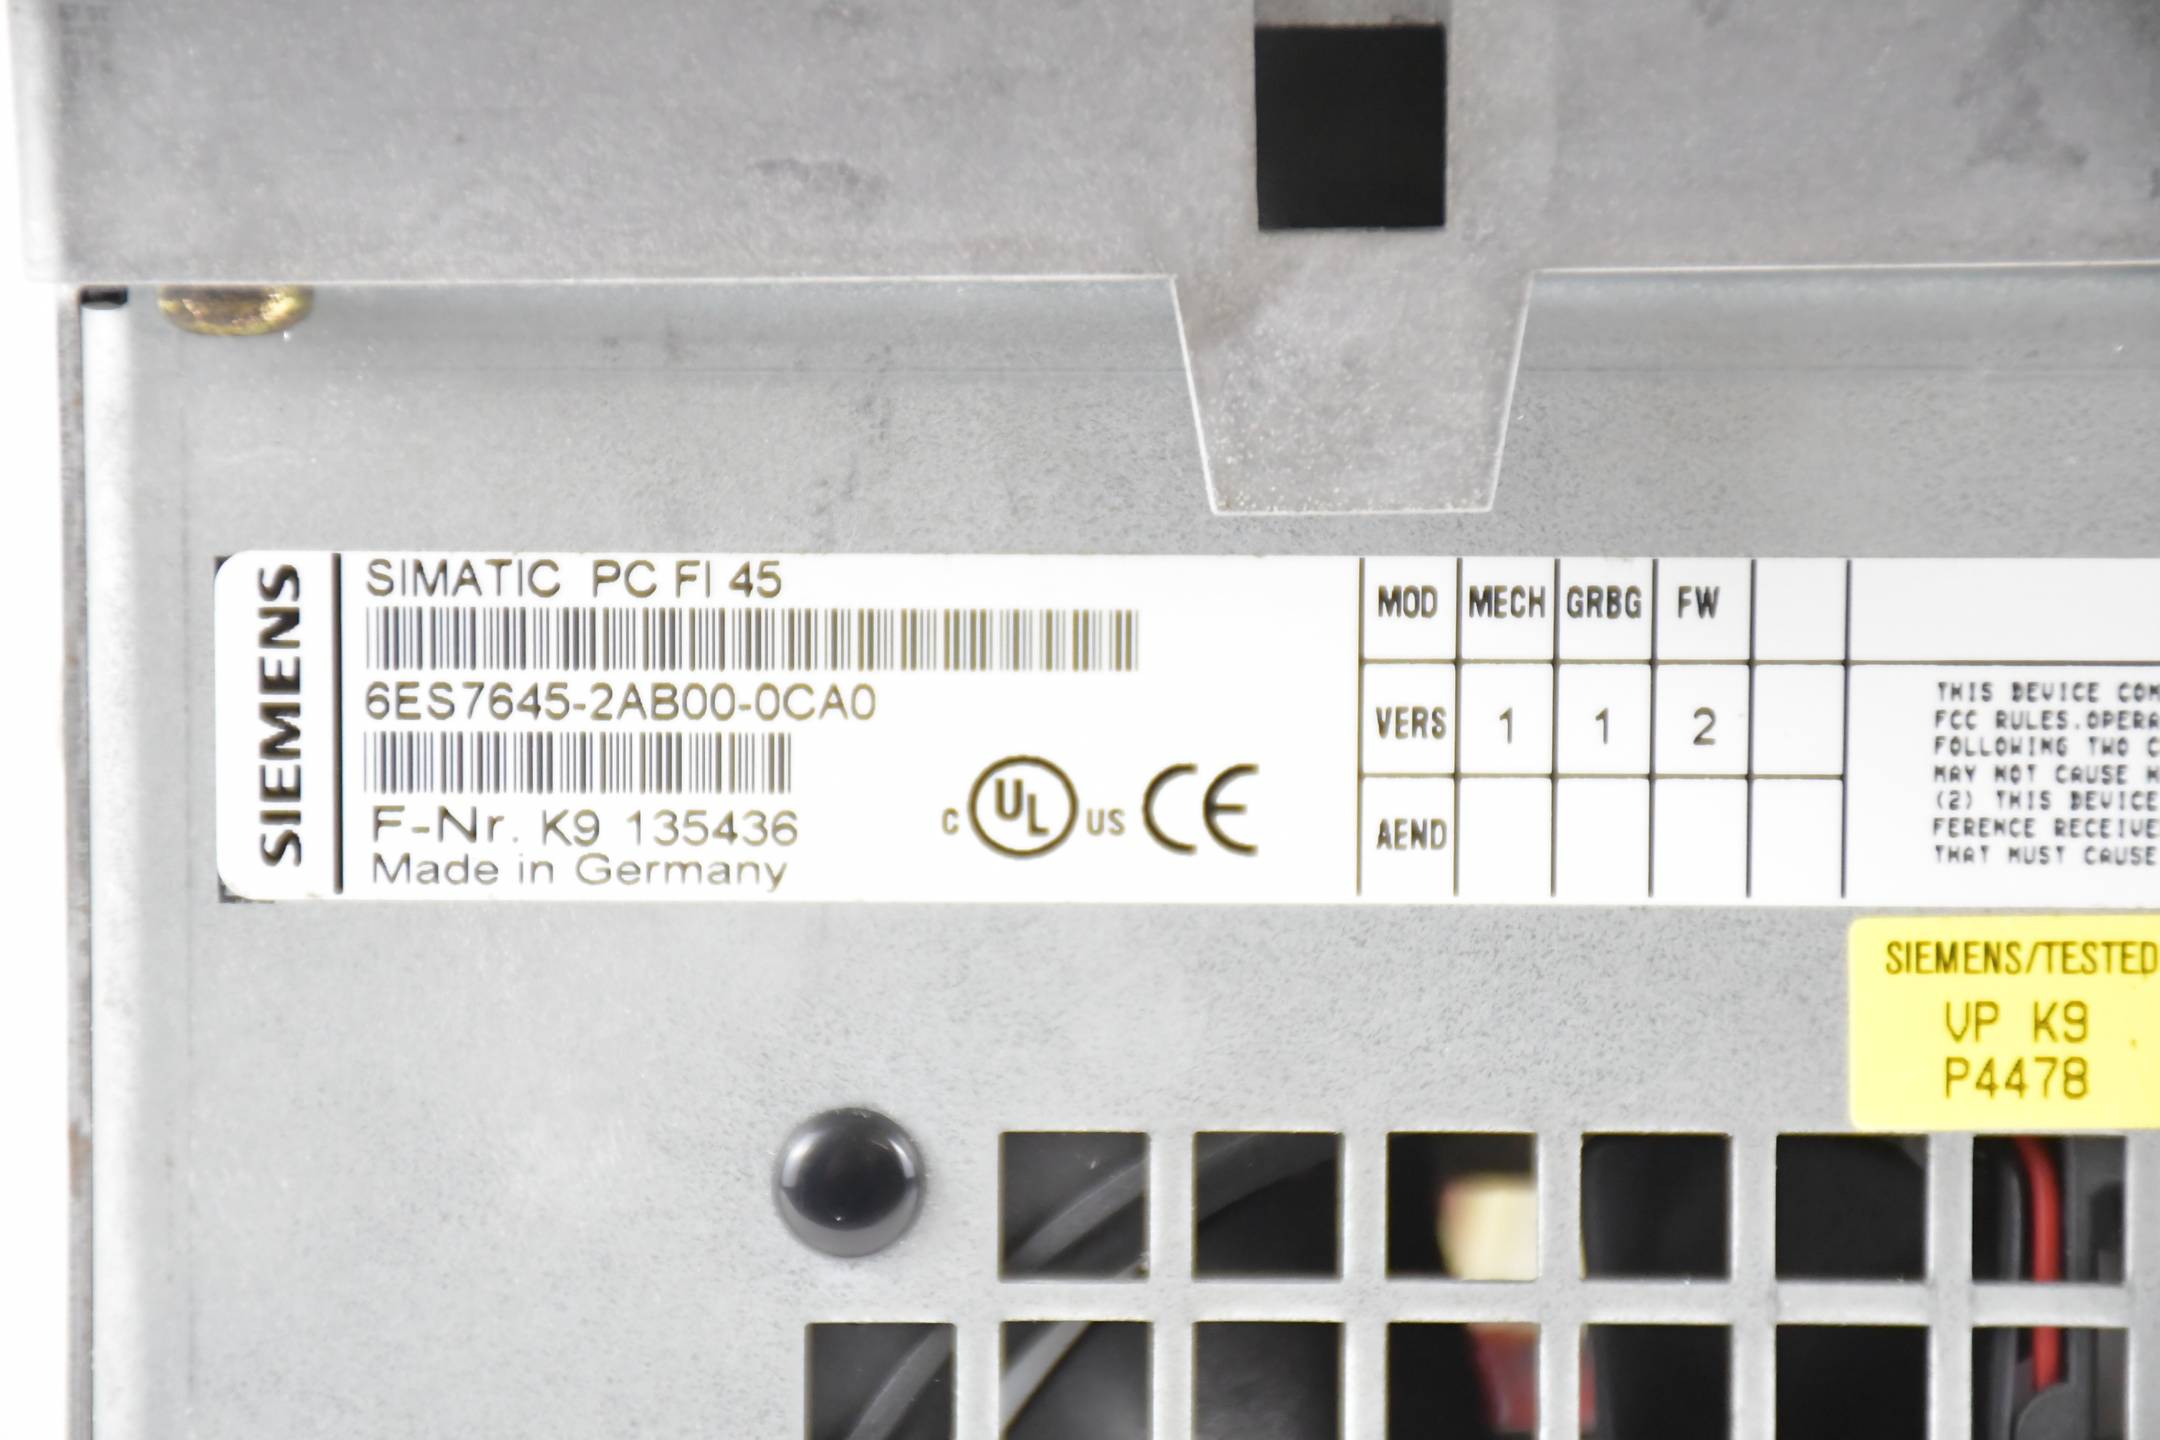 Siemens simatic PC FI45 System 13,3" 6ES7645-2AB00-0CA0 ( 6ES7 645-2AB00-0CA0 )